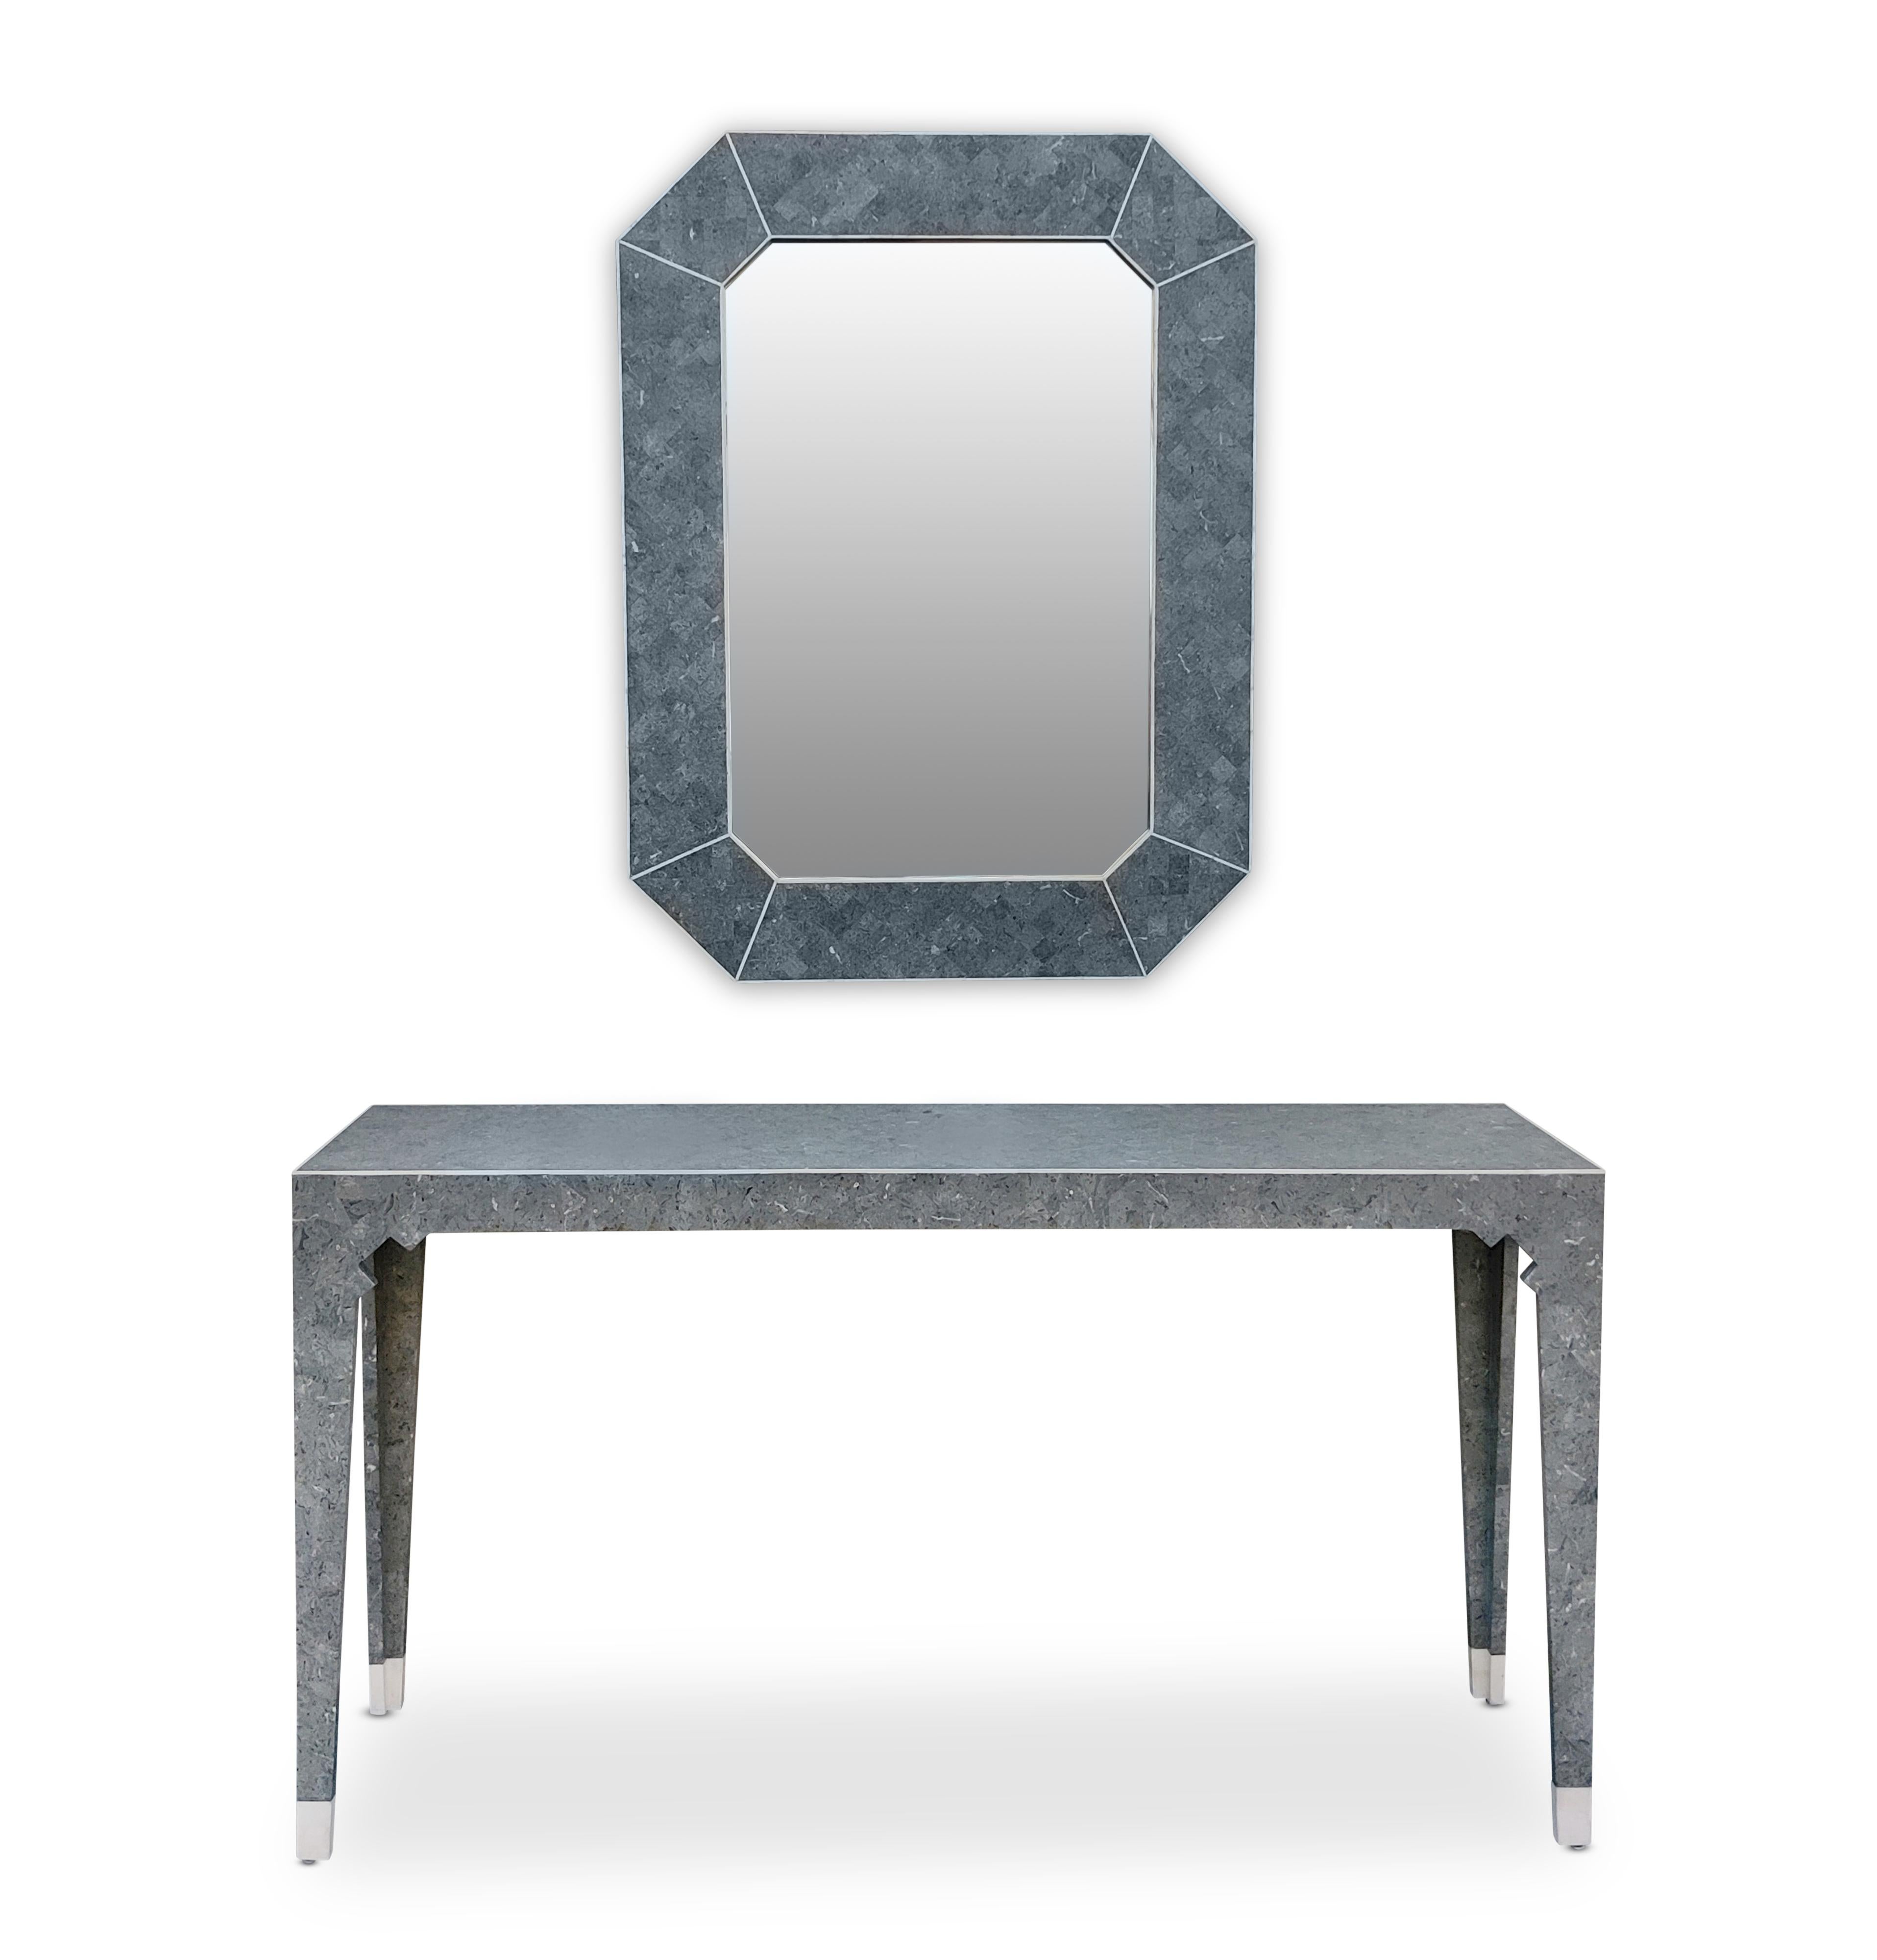 Miroir mural post-moderne Oggetti et table console étroite très élégants. Semblable aux ensembles miroir tessellé + console de Maitland Smith, cet ensemble a été fabriqué à la fin des années 80 ou au début des années 90. Remarquez le style de la